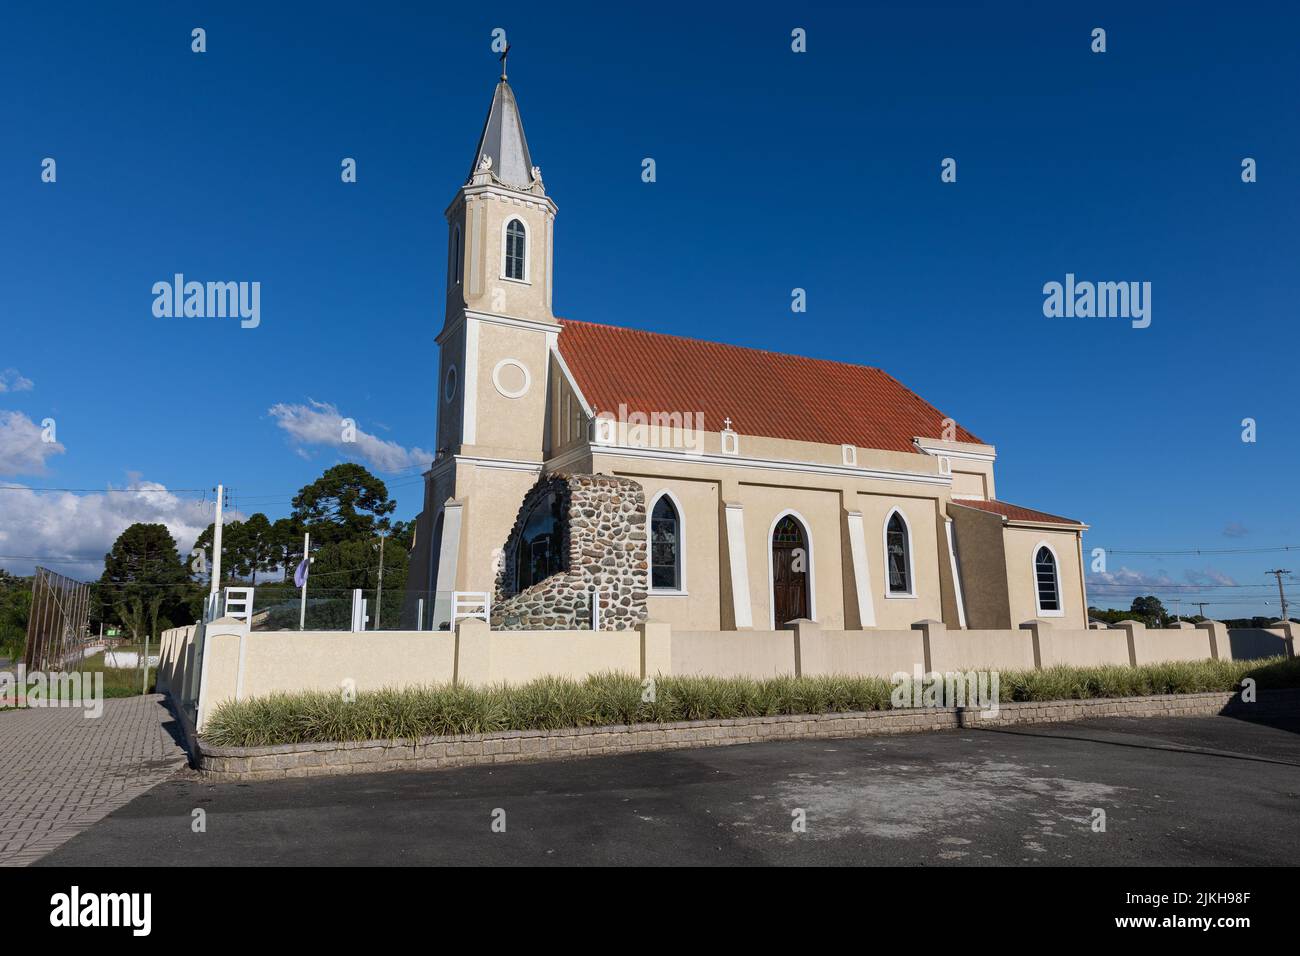 Una vista panoramica di una chiesa cattolica contro un cielo blu senza nuvole Foto Stock